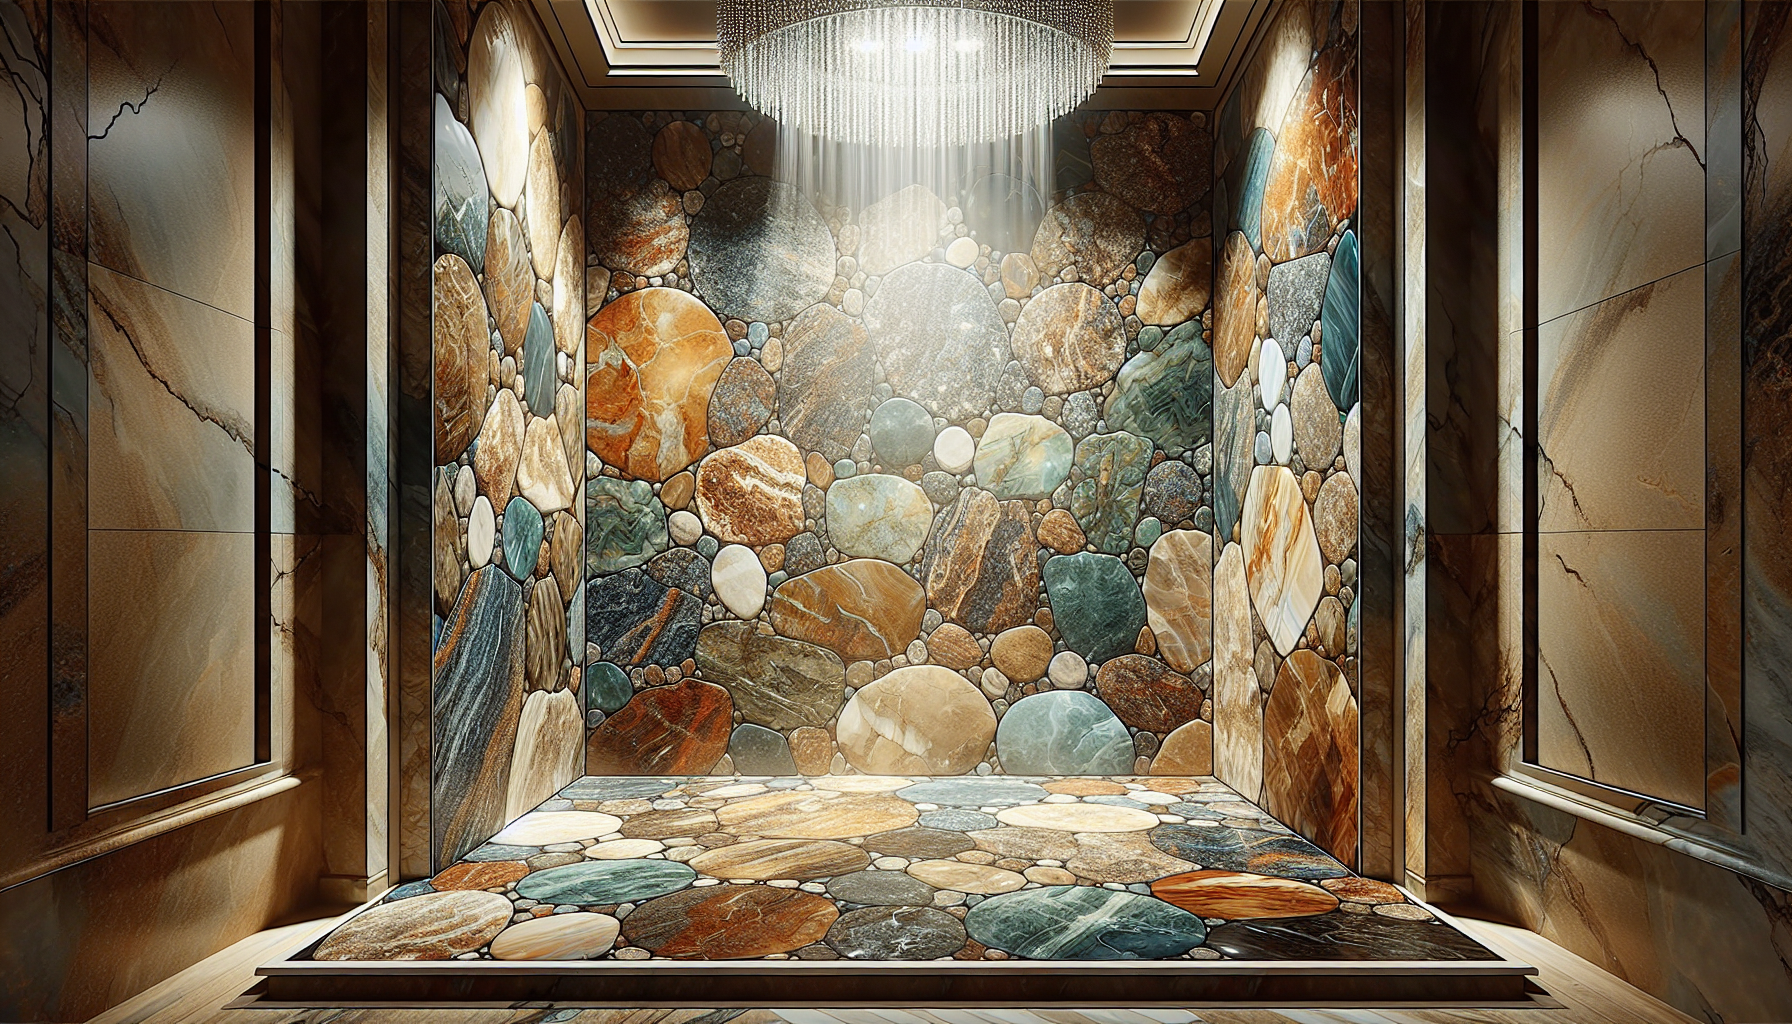 Exquisite Naturstein Dusche mit einzigartigen Farben und Strukturen